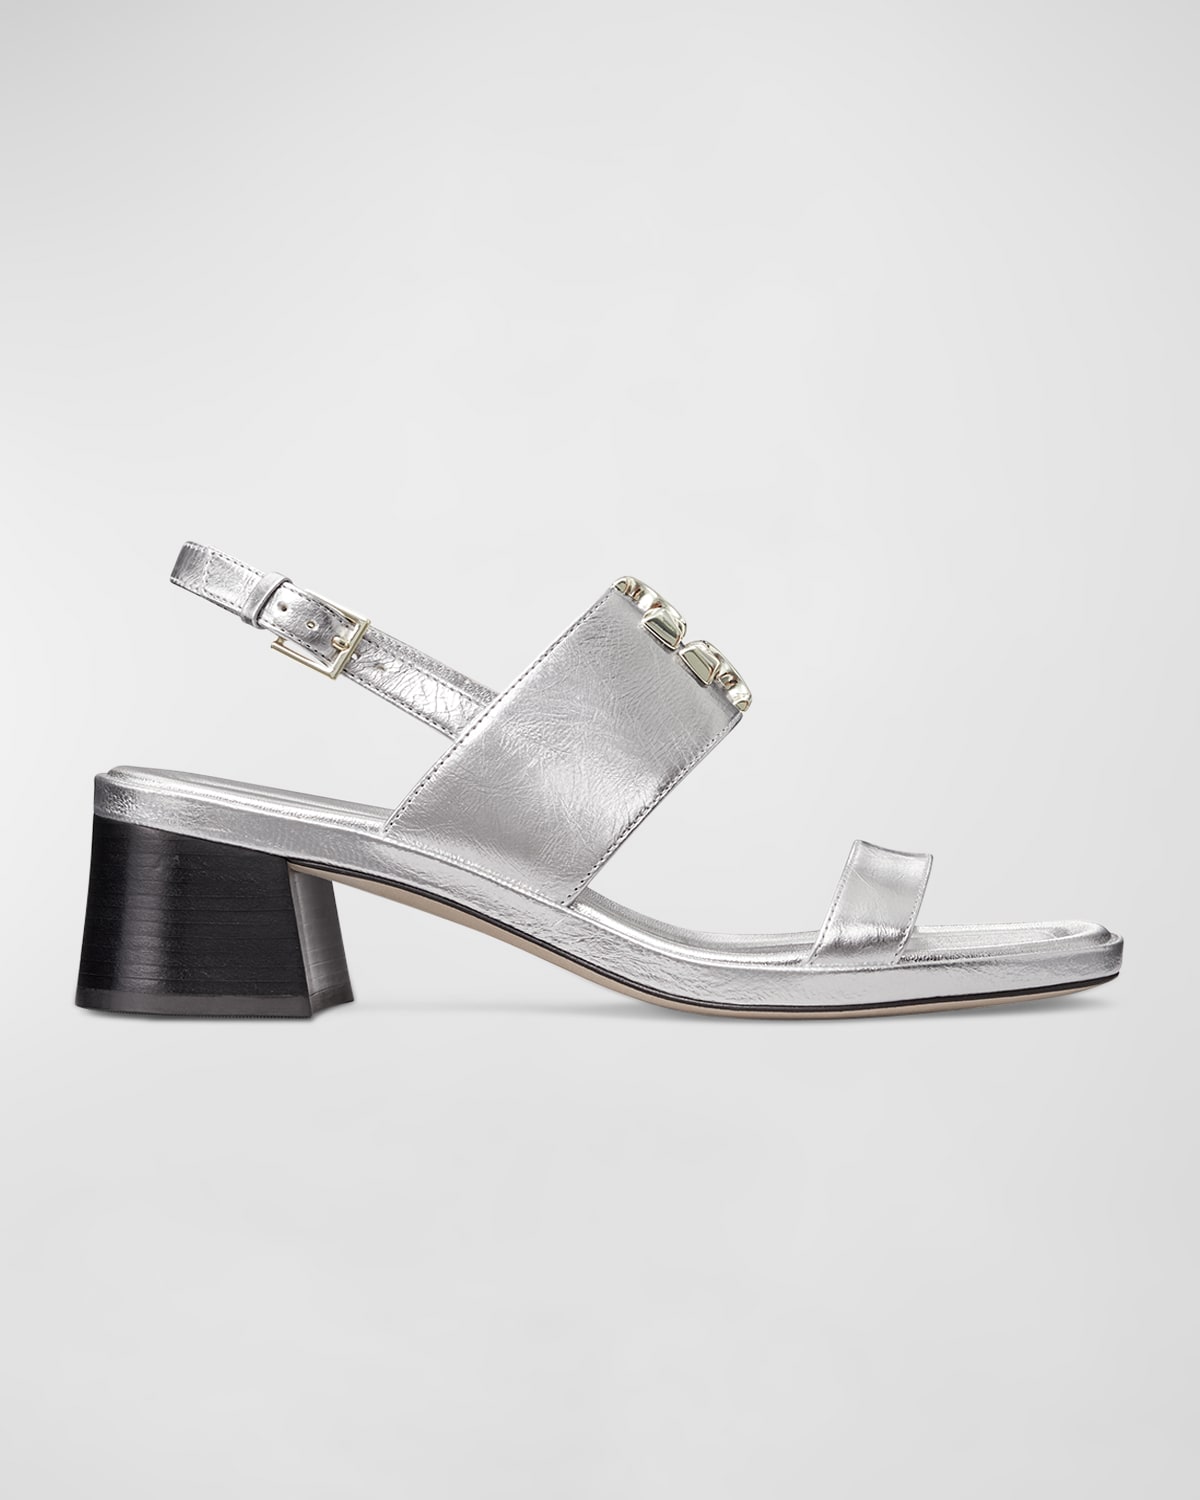 Tory Burch Block Heel Sandals | Neiman Marcus